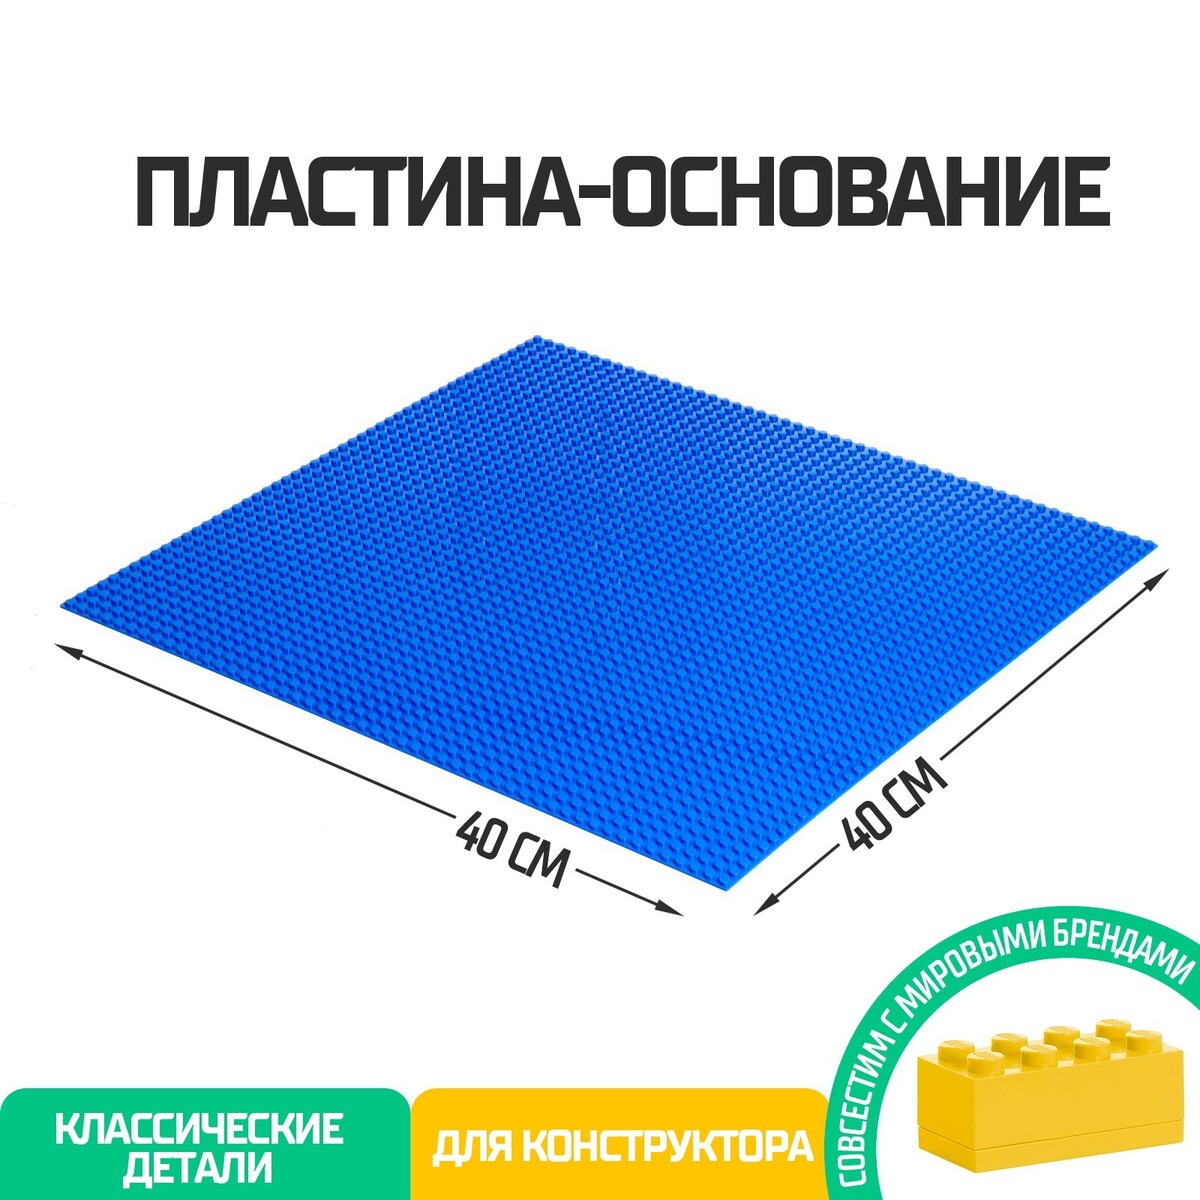 Пластина-основание для конструктора, 40 × 40 см, цвет синий пластина основание для конструктора 38 4 × 38 4 см салатовый